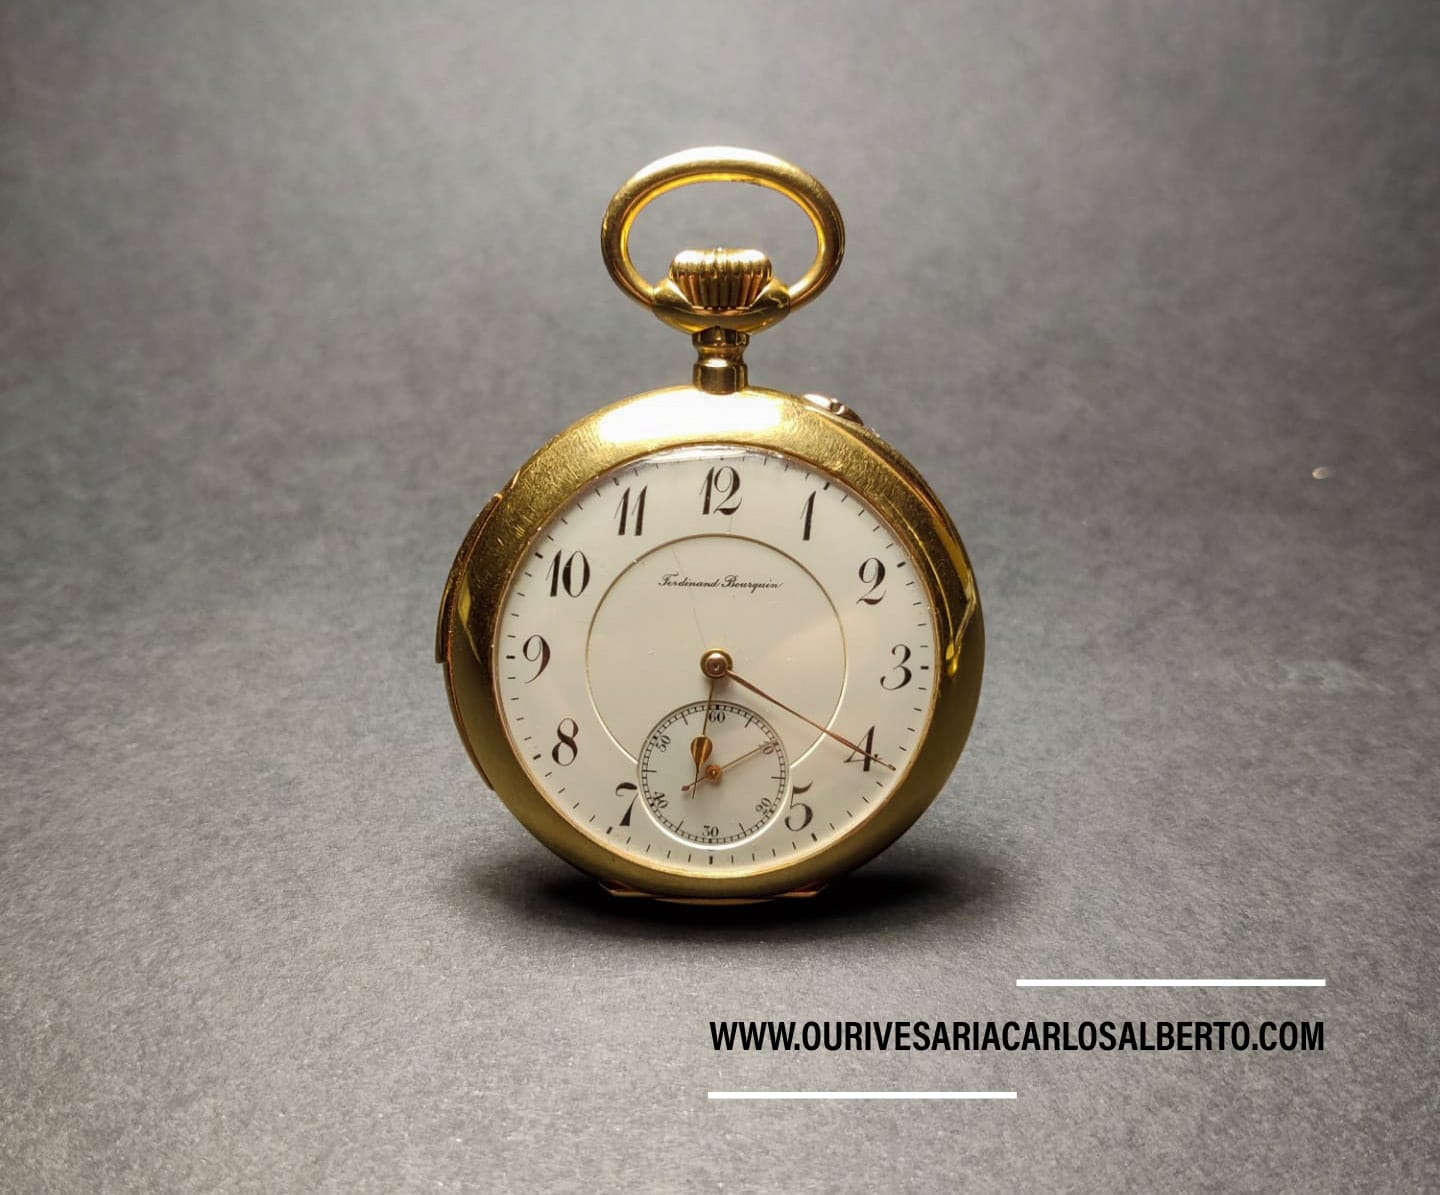 Relógio de bolso "Ferdinand Bourquin" Ourivesaria Carlos Alberto